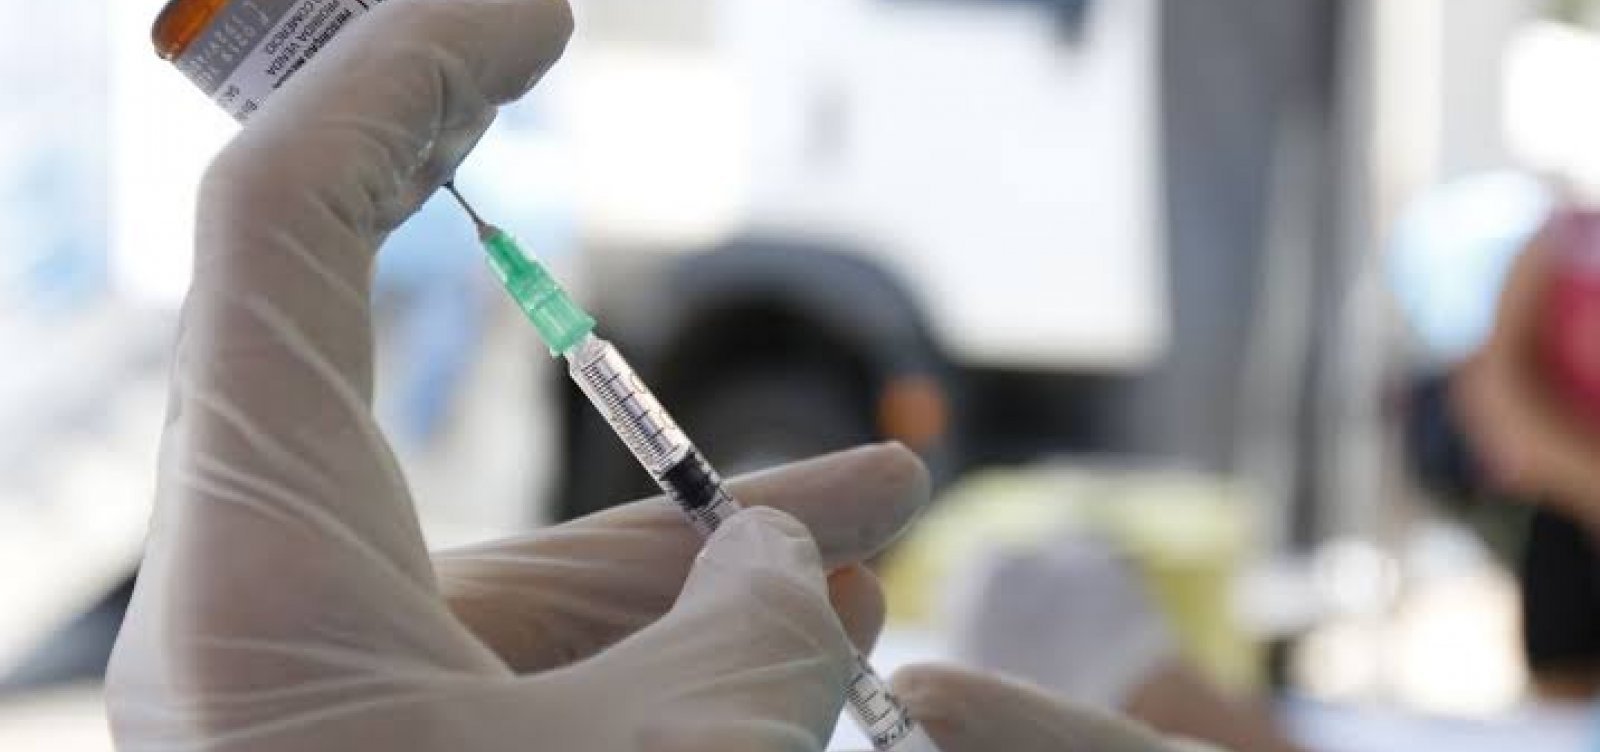 Empresários e políticos tomam vacina contra covid às escondidas, denuncia revista